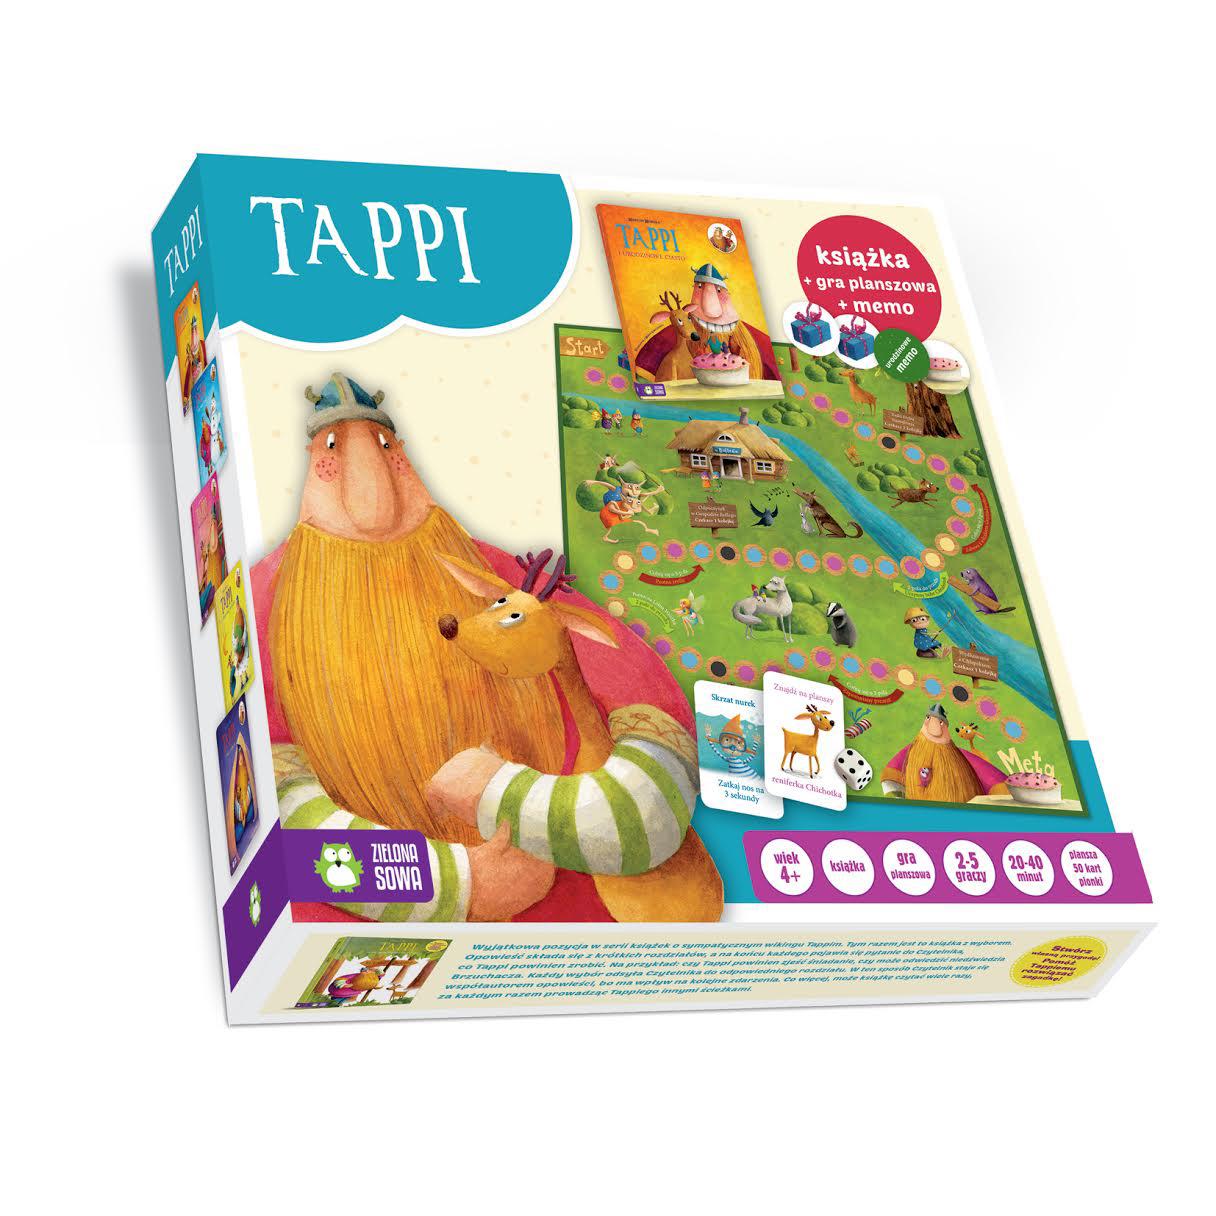 Urodziny Tappiego - książka i gra